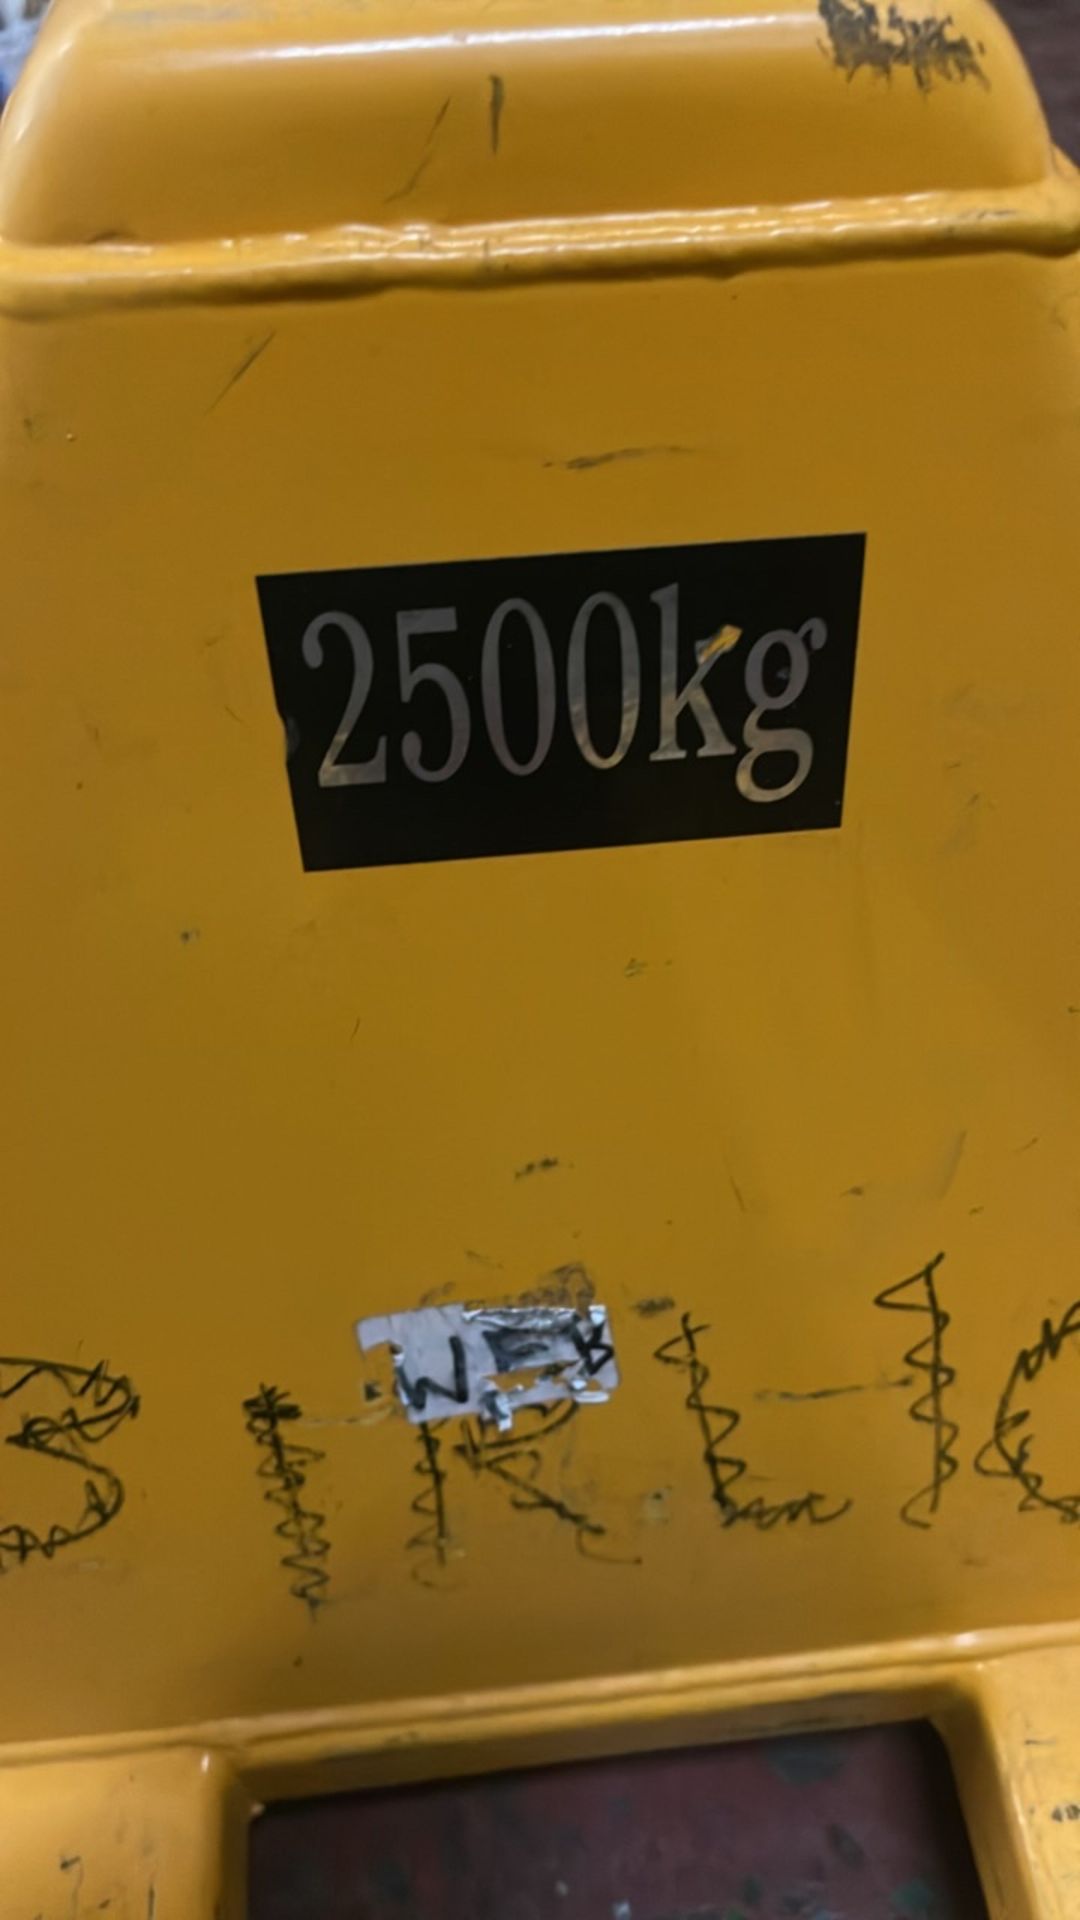 2500kg Pallet Truck - Bild 2 aus 5